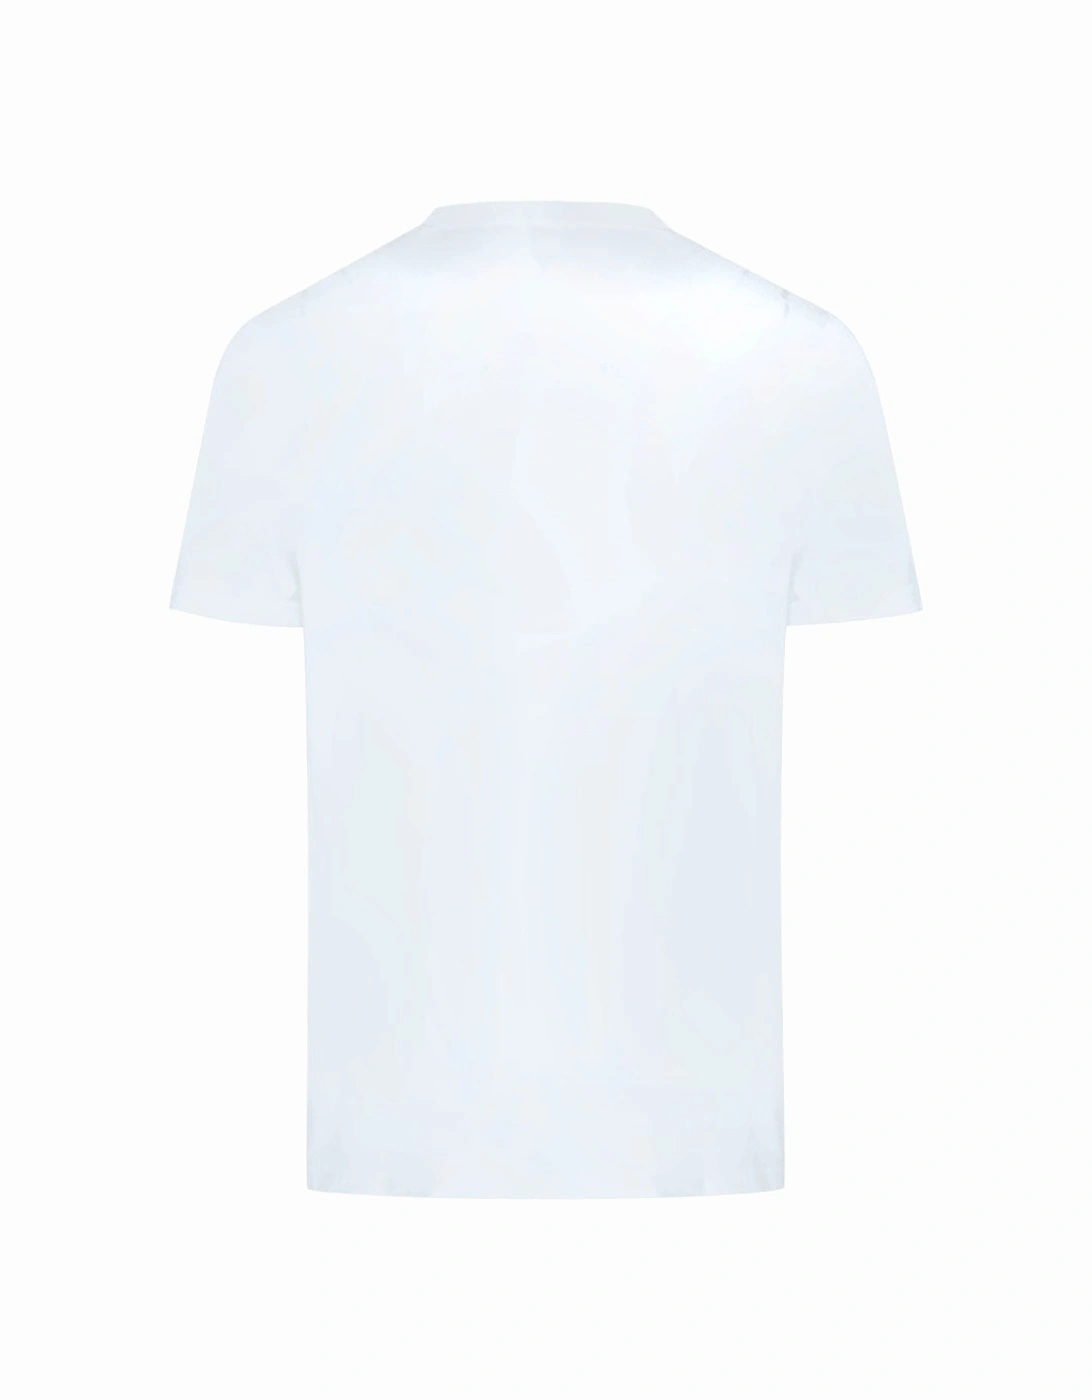 Very Very Logo White T-Shirt